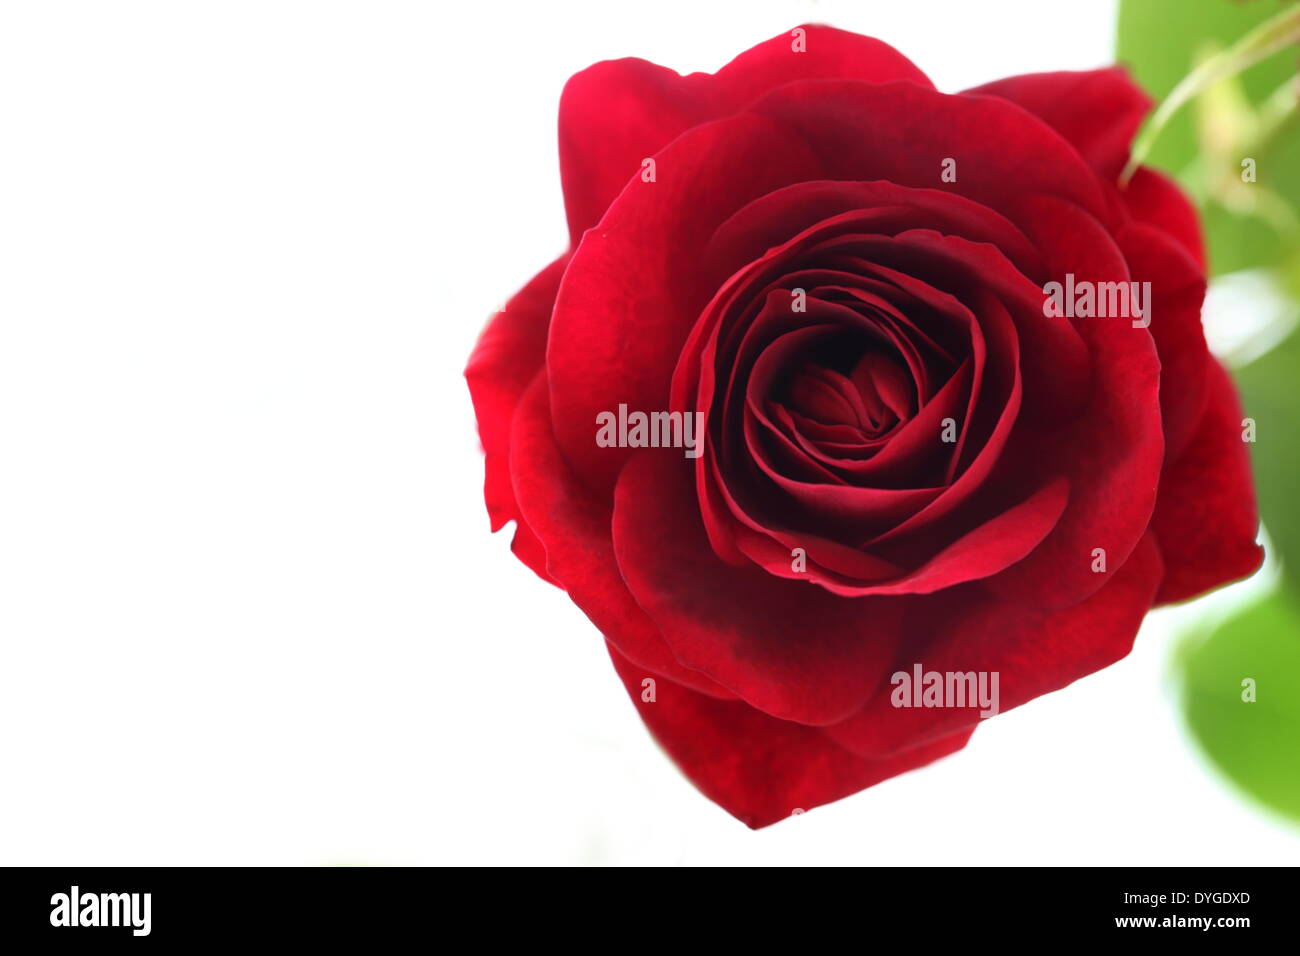 Rose flower Stock Photo